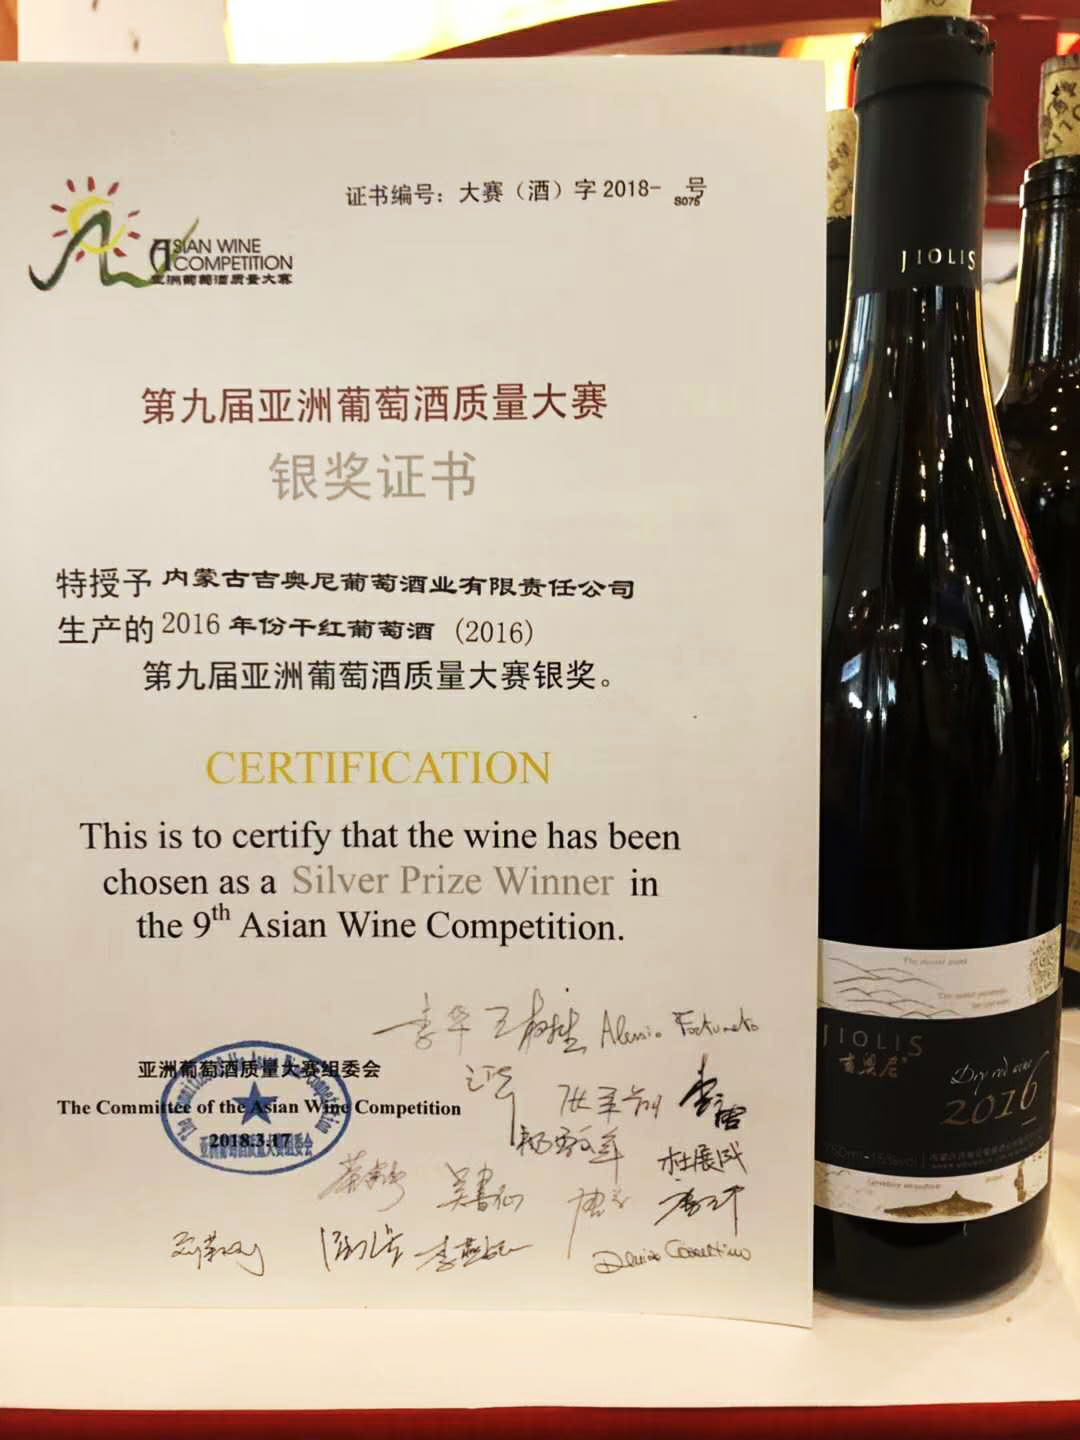 2016年份干红-第九届亚洲葡萄酒质量大赛银奖.png